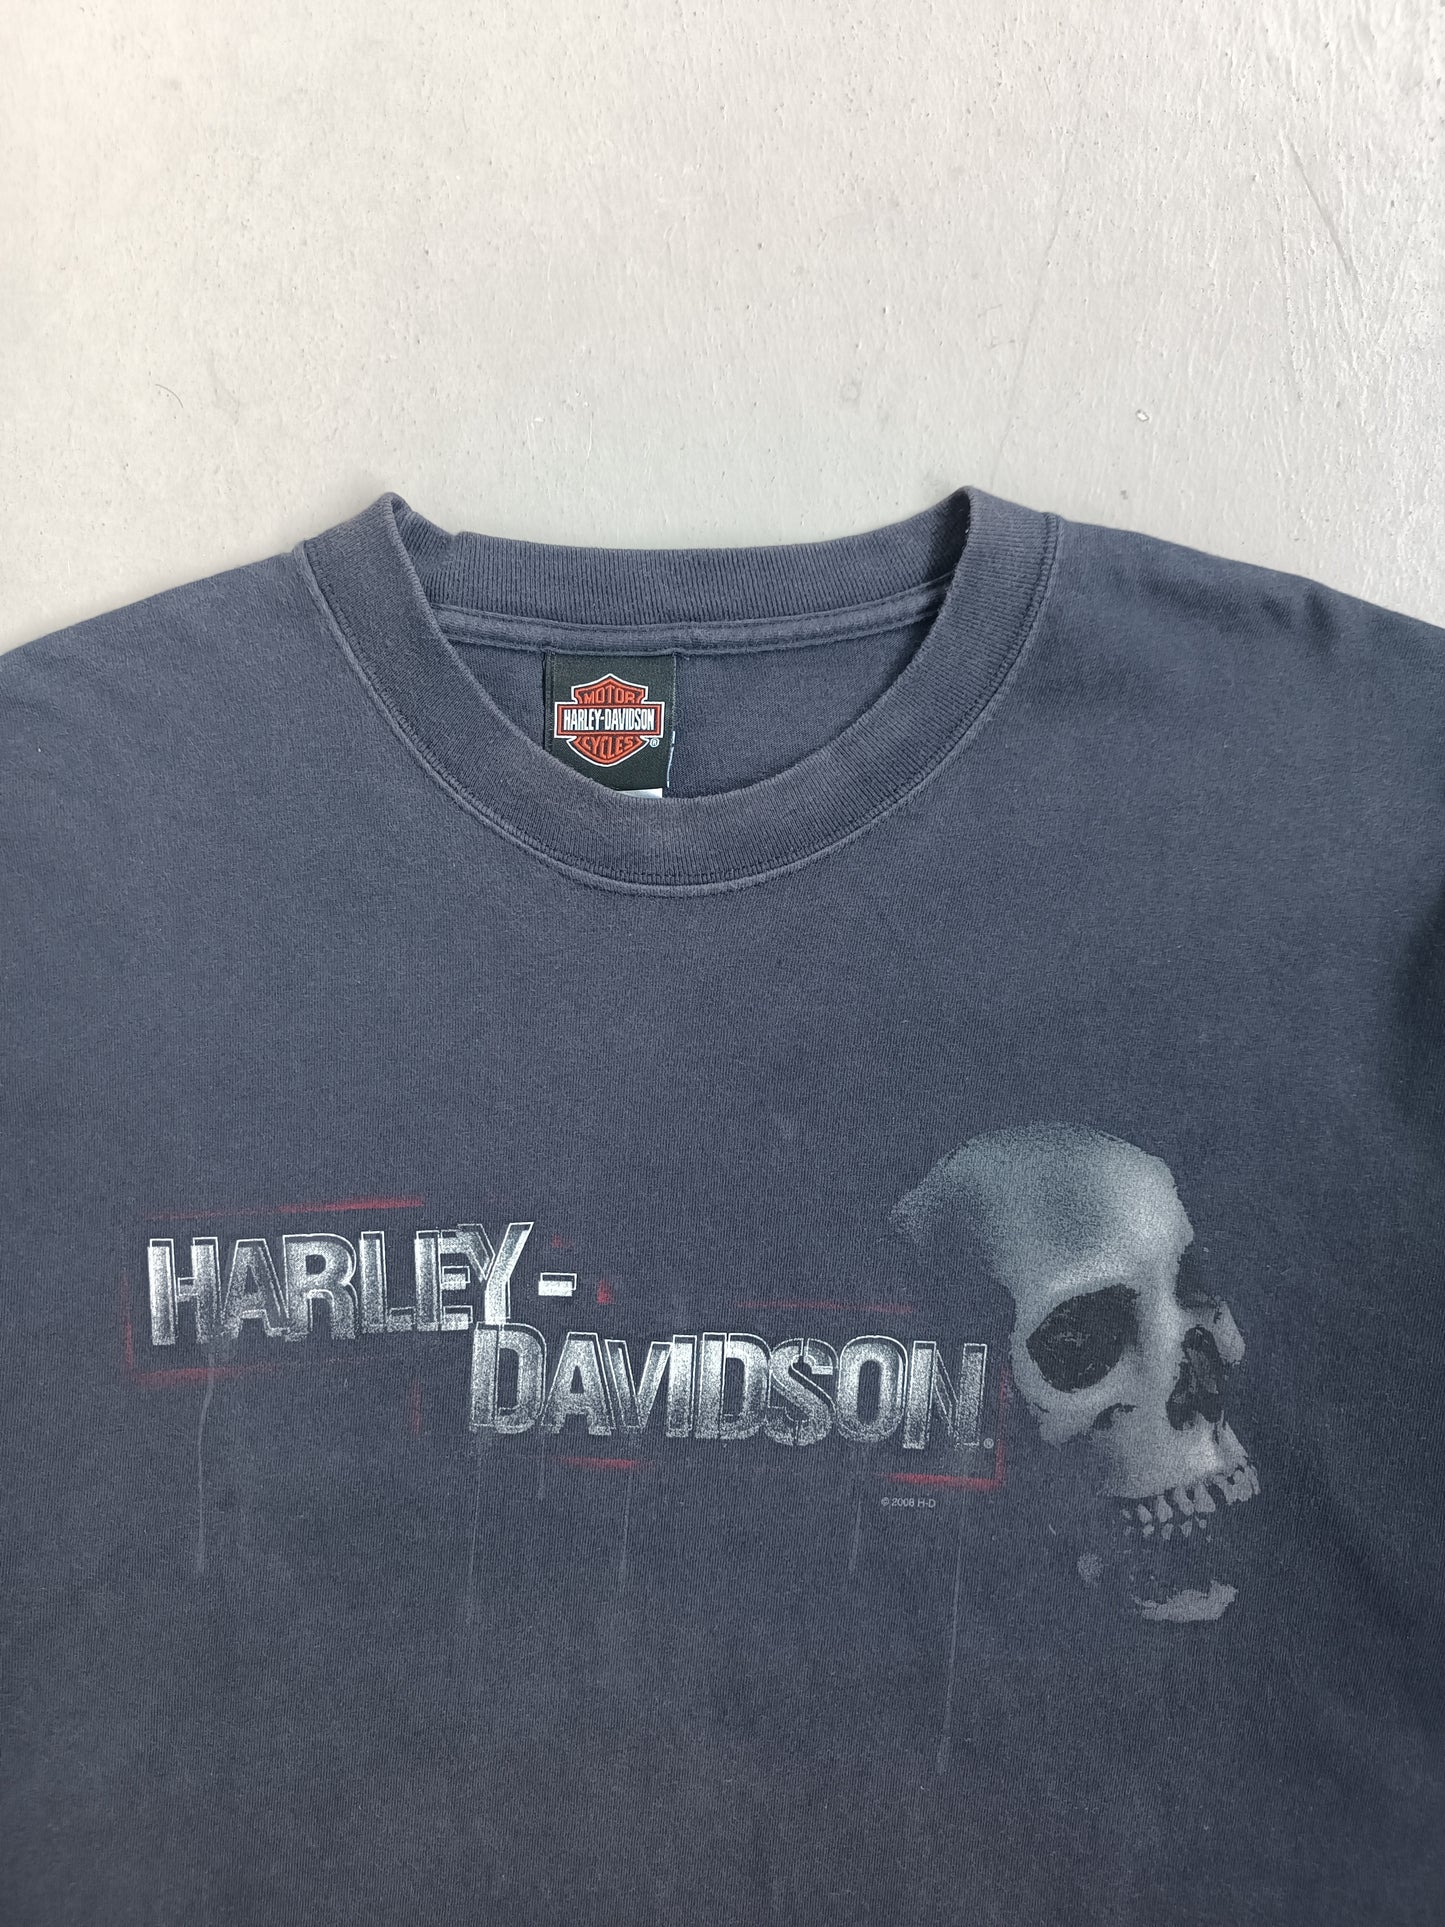 Harley Davidson Arrowhead - XL